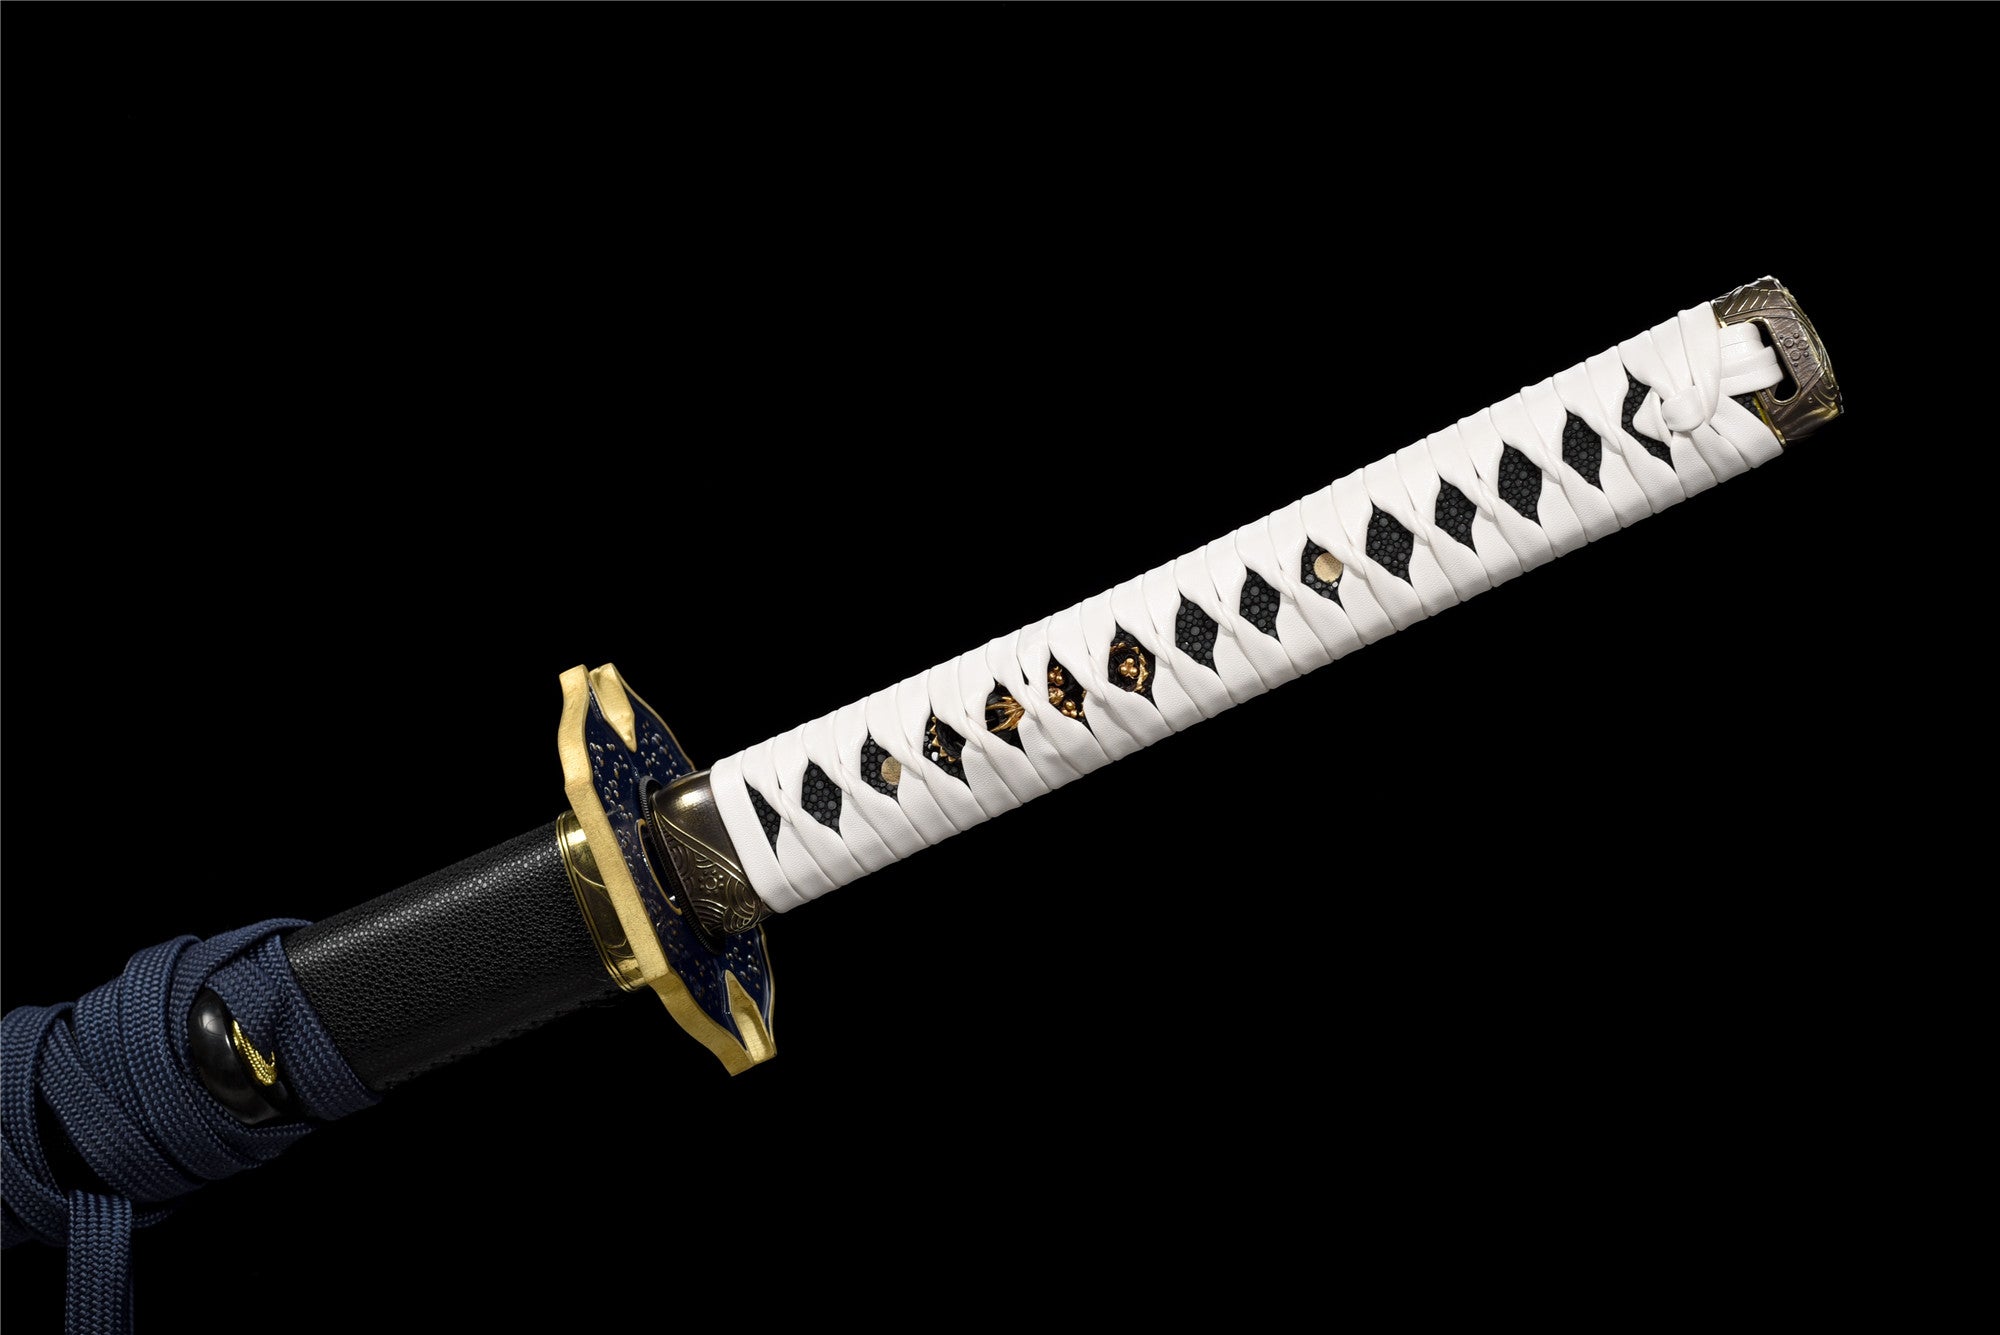 Anime Yamato Katana Schwert, Devil May Cry 5 Vergil Schwert, echtes handgefertigtes japanisches Samurai-Schwert, T10 Stahlton, gehärtet mit Hamon